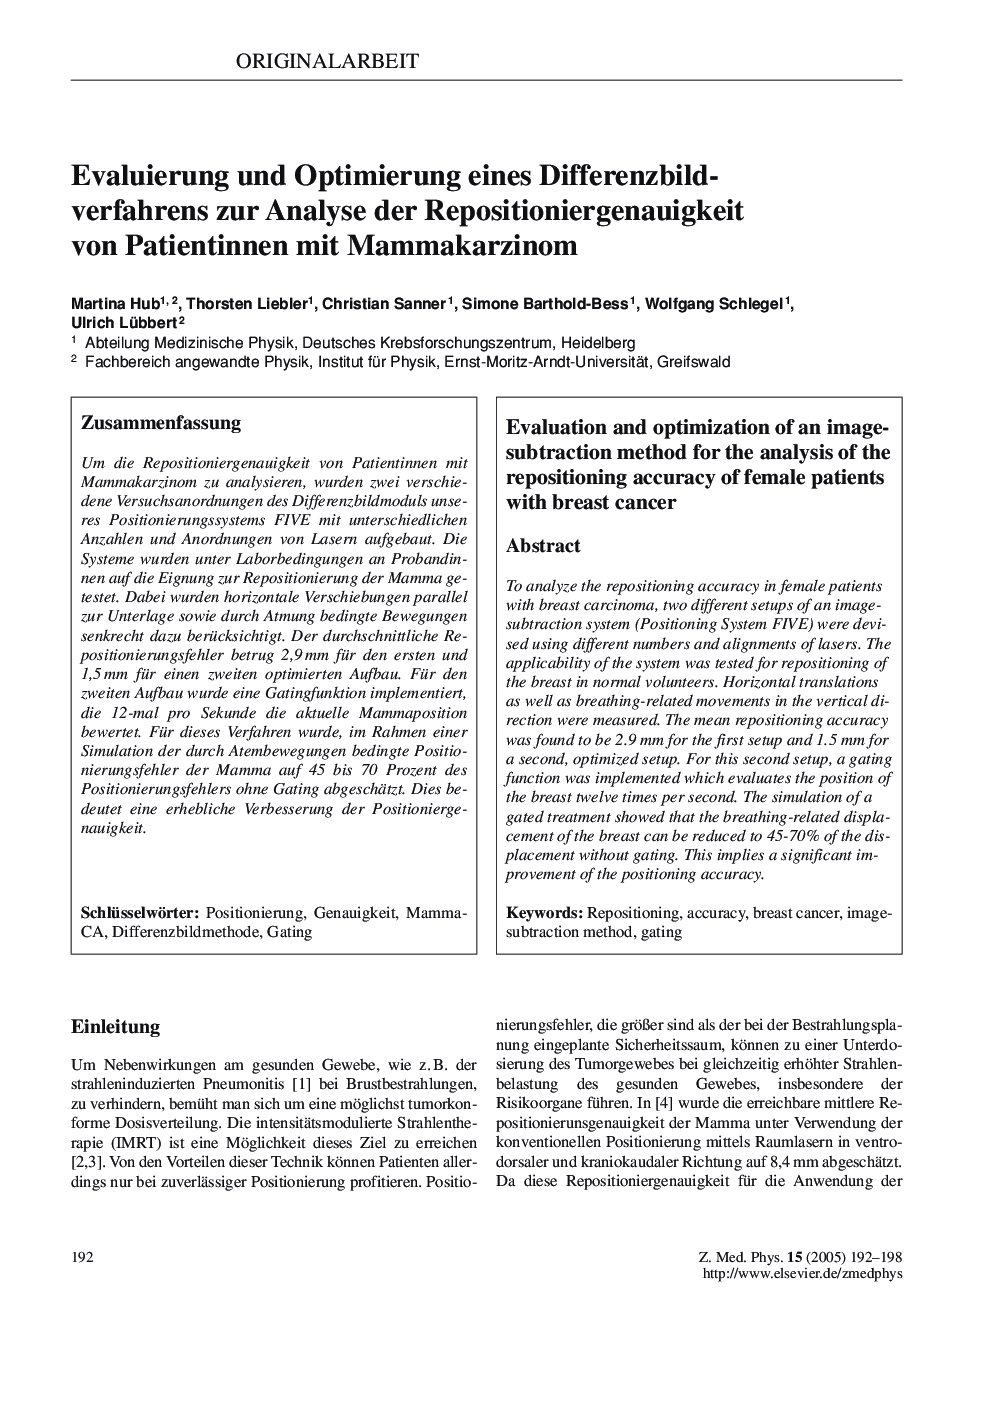 Evaluierung und Optimierung eines Differenzbildverfahrens zur Analyse der Repositioniergenauigkeit von Patientinnen mit Mammakarzinom